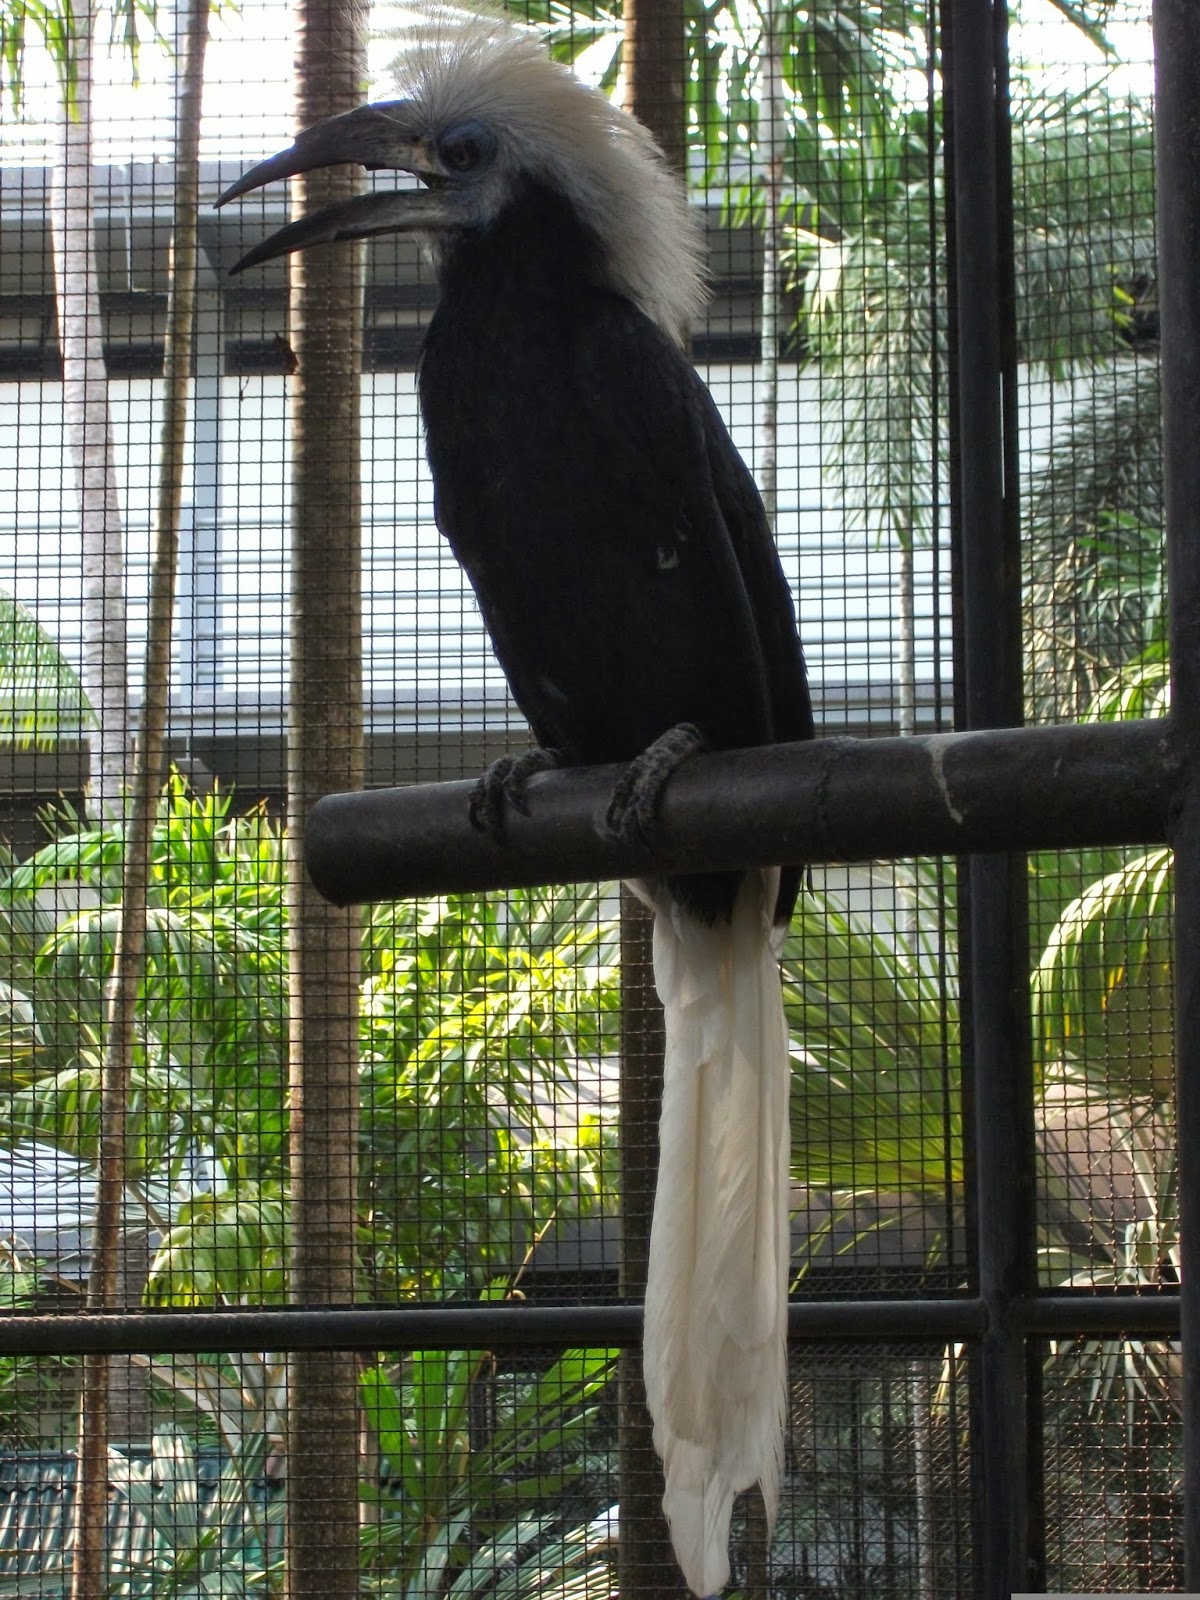 Aviary at Nong Nooch Tropical Garden